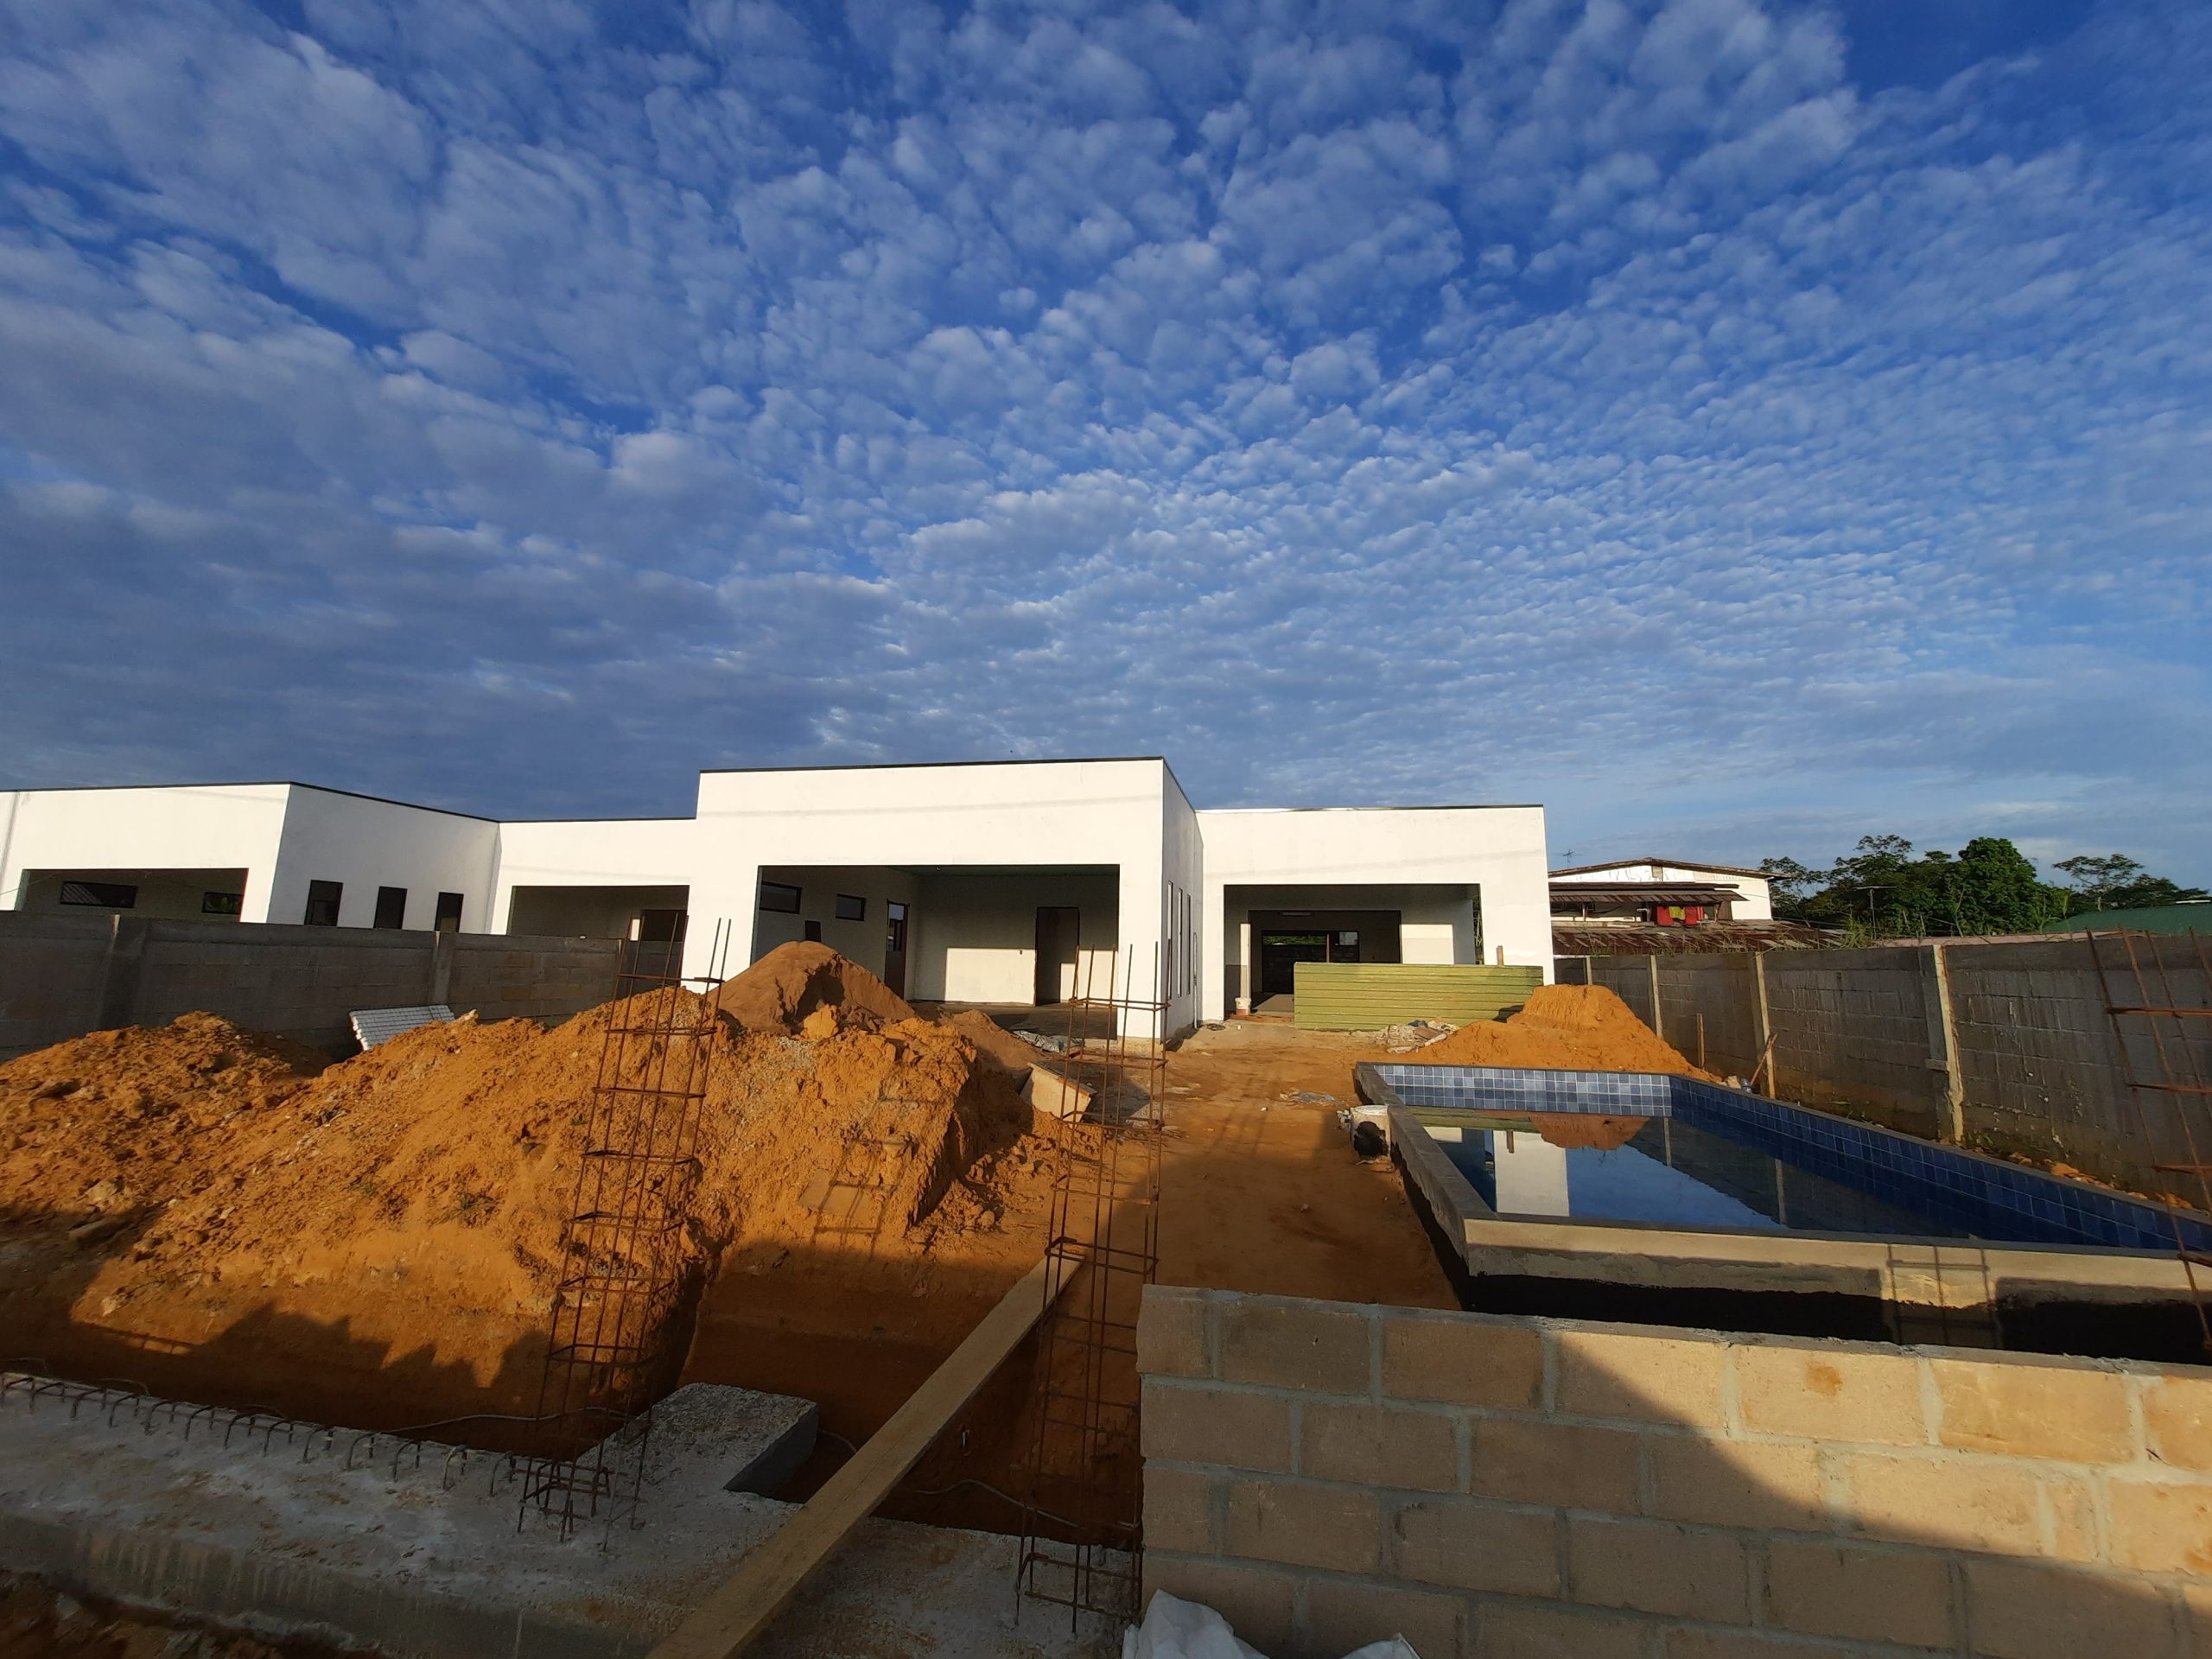 Bouwproject van Basiton Group. Enkele luxe huizen in aanbouw met hopen zand en een onafgemaakt zwembad aan de voorkant.